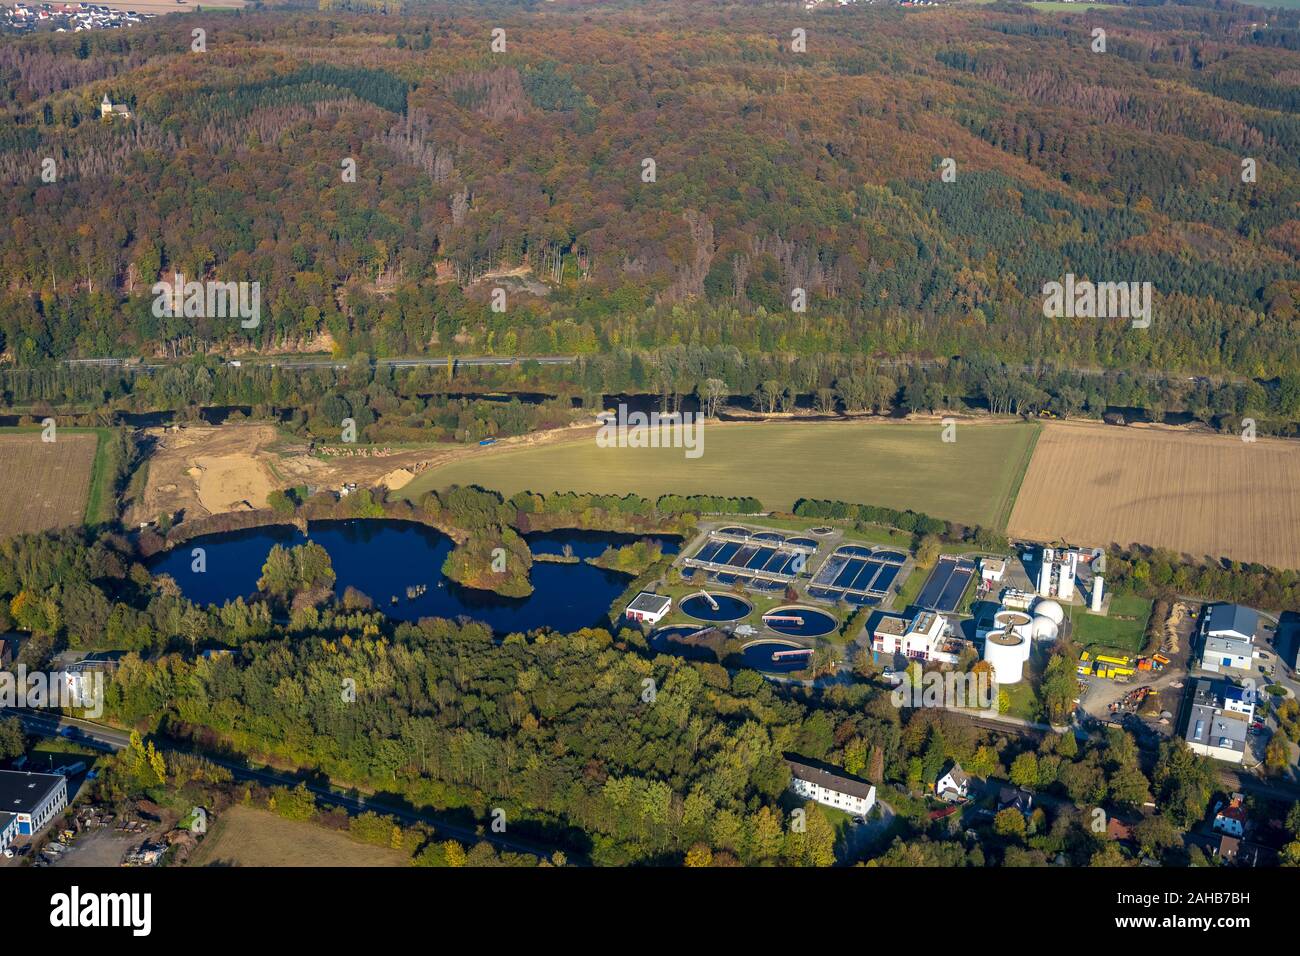 Fotografia aerea, Stadtwerke Arnsberg alimentazione idrica con impianto di trattamento dei liquami, valle della Ruhr percorso ciclo sito in costruzione sul fiume Ruhr, costruire Foto Stock